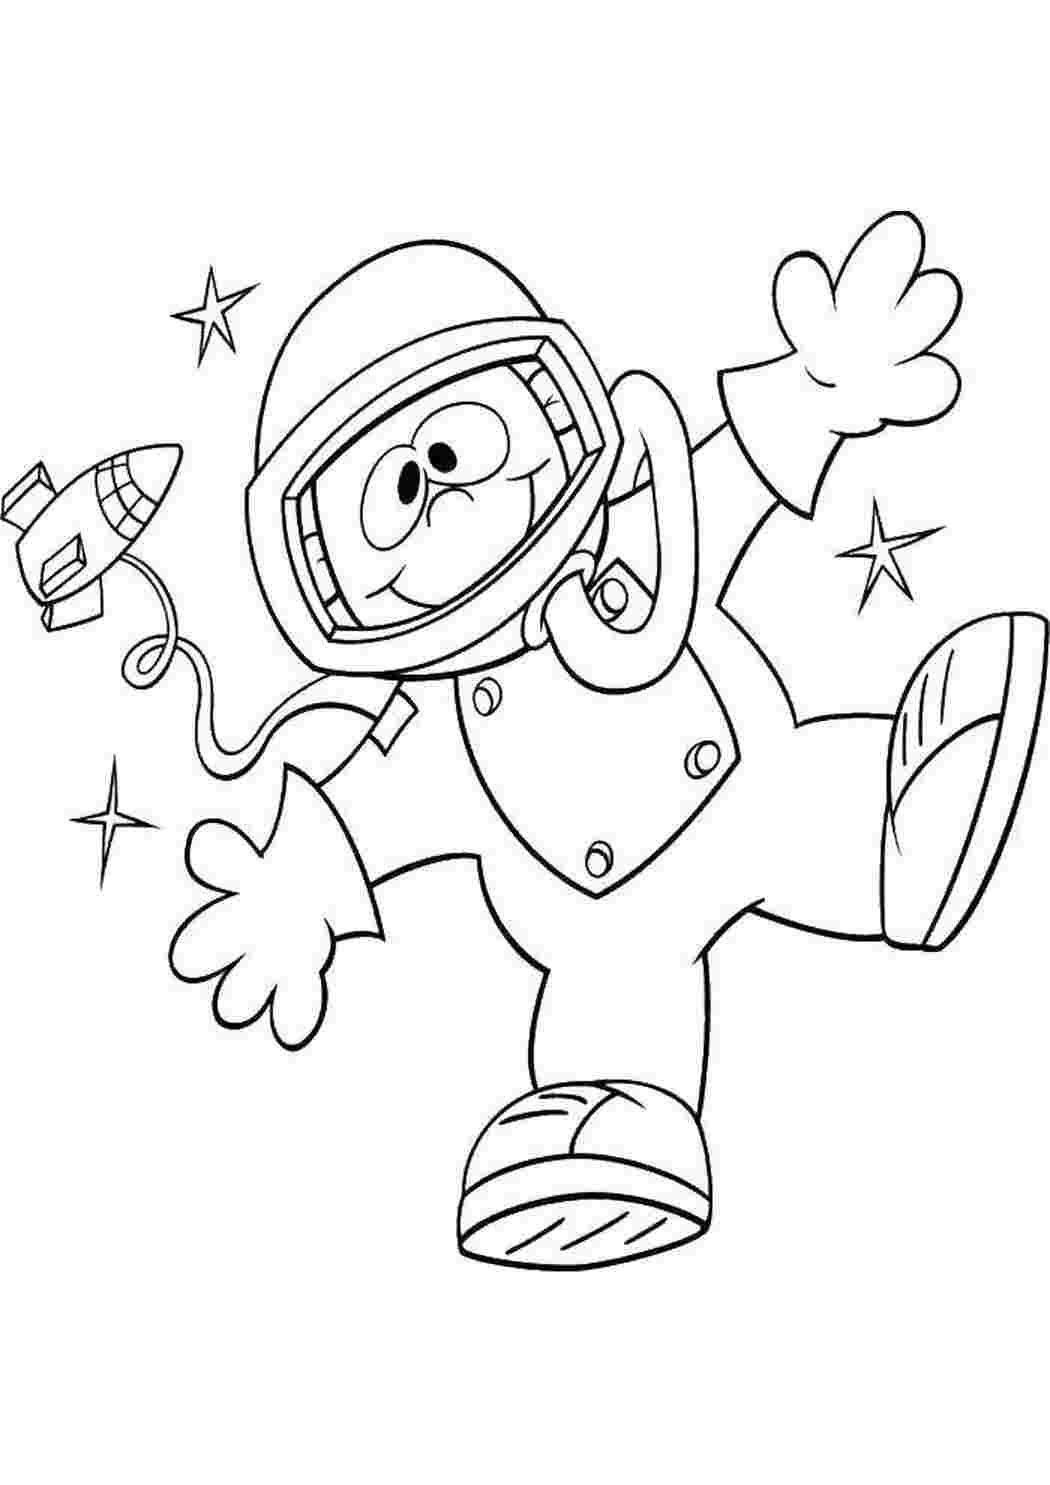 Космонавт шаблон для вырезания распечатать. Космонавт раскраска для детей. Раскраска день космонавтики для детей. Космонавтика раскраски для детей. Космос раскраска для детей.